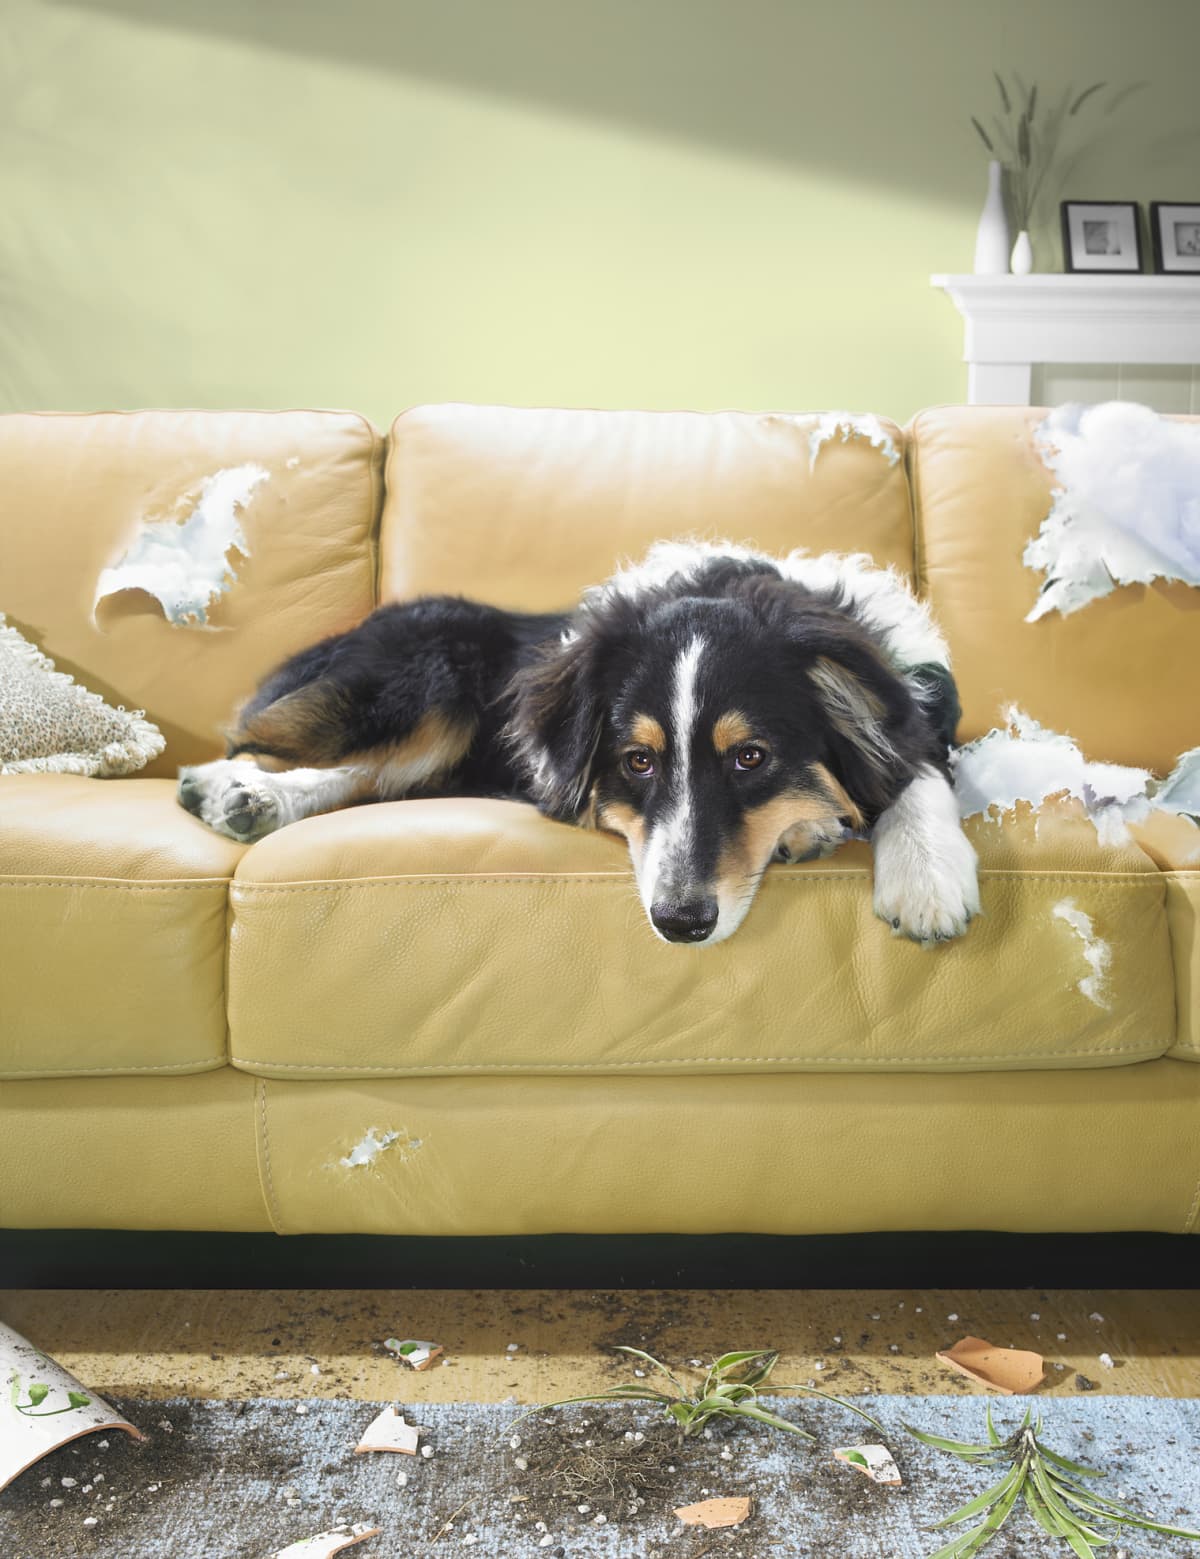 A dog sitting on a torn sofa